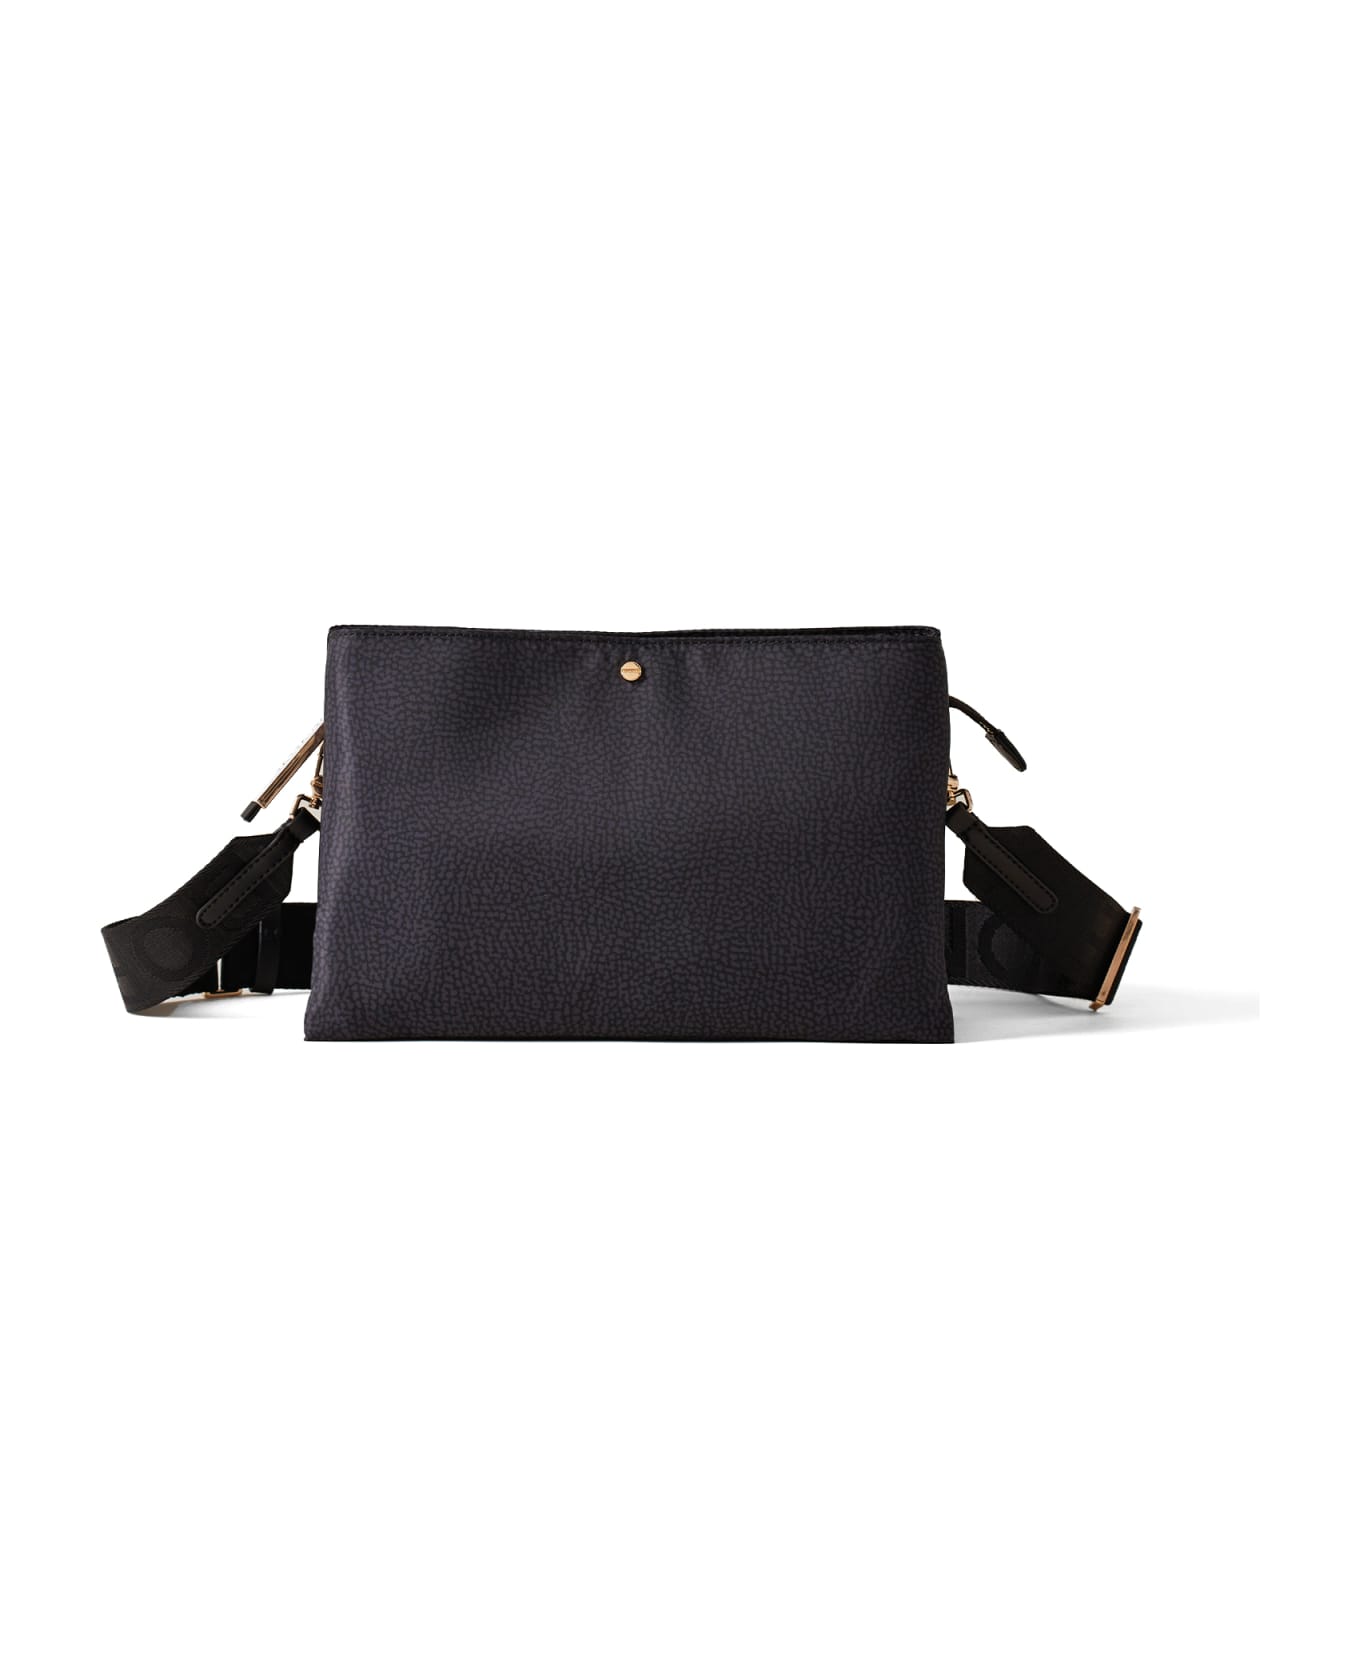 Borbonese Small Black Shoulder Bag - DARK BLACK